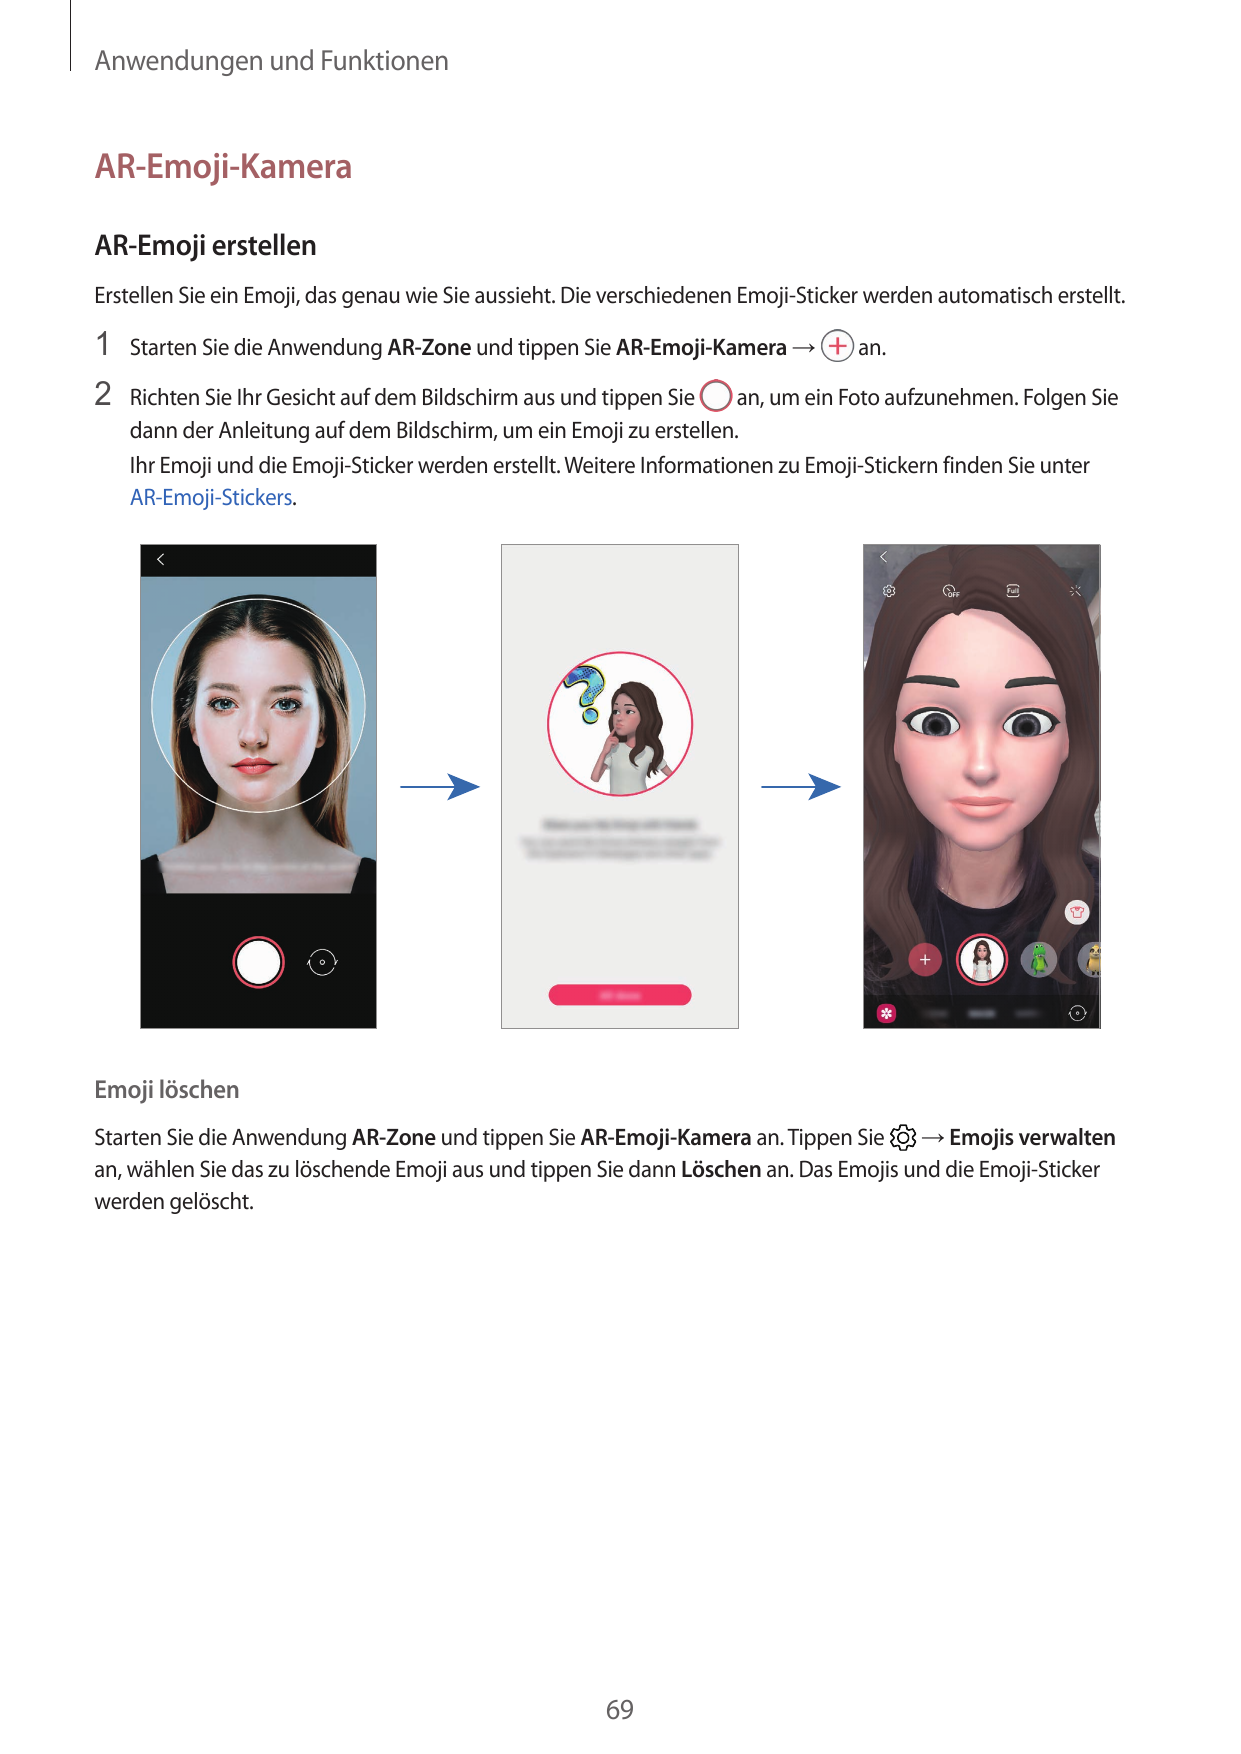 Anwendungen und FunktionenAR-Emoji-KameraAR-Emoji erstellenErstellen Sie ein Emoji, das genau wie Sie aussieht. Die verschiedene